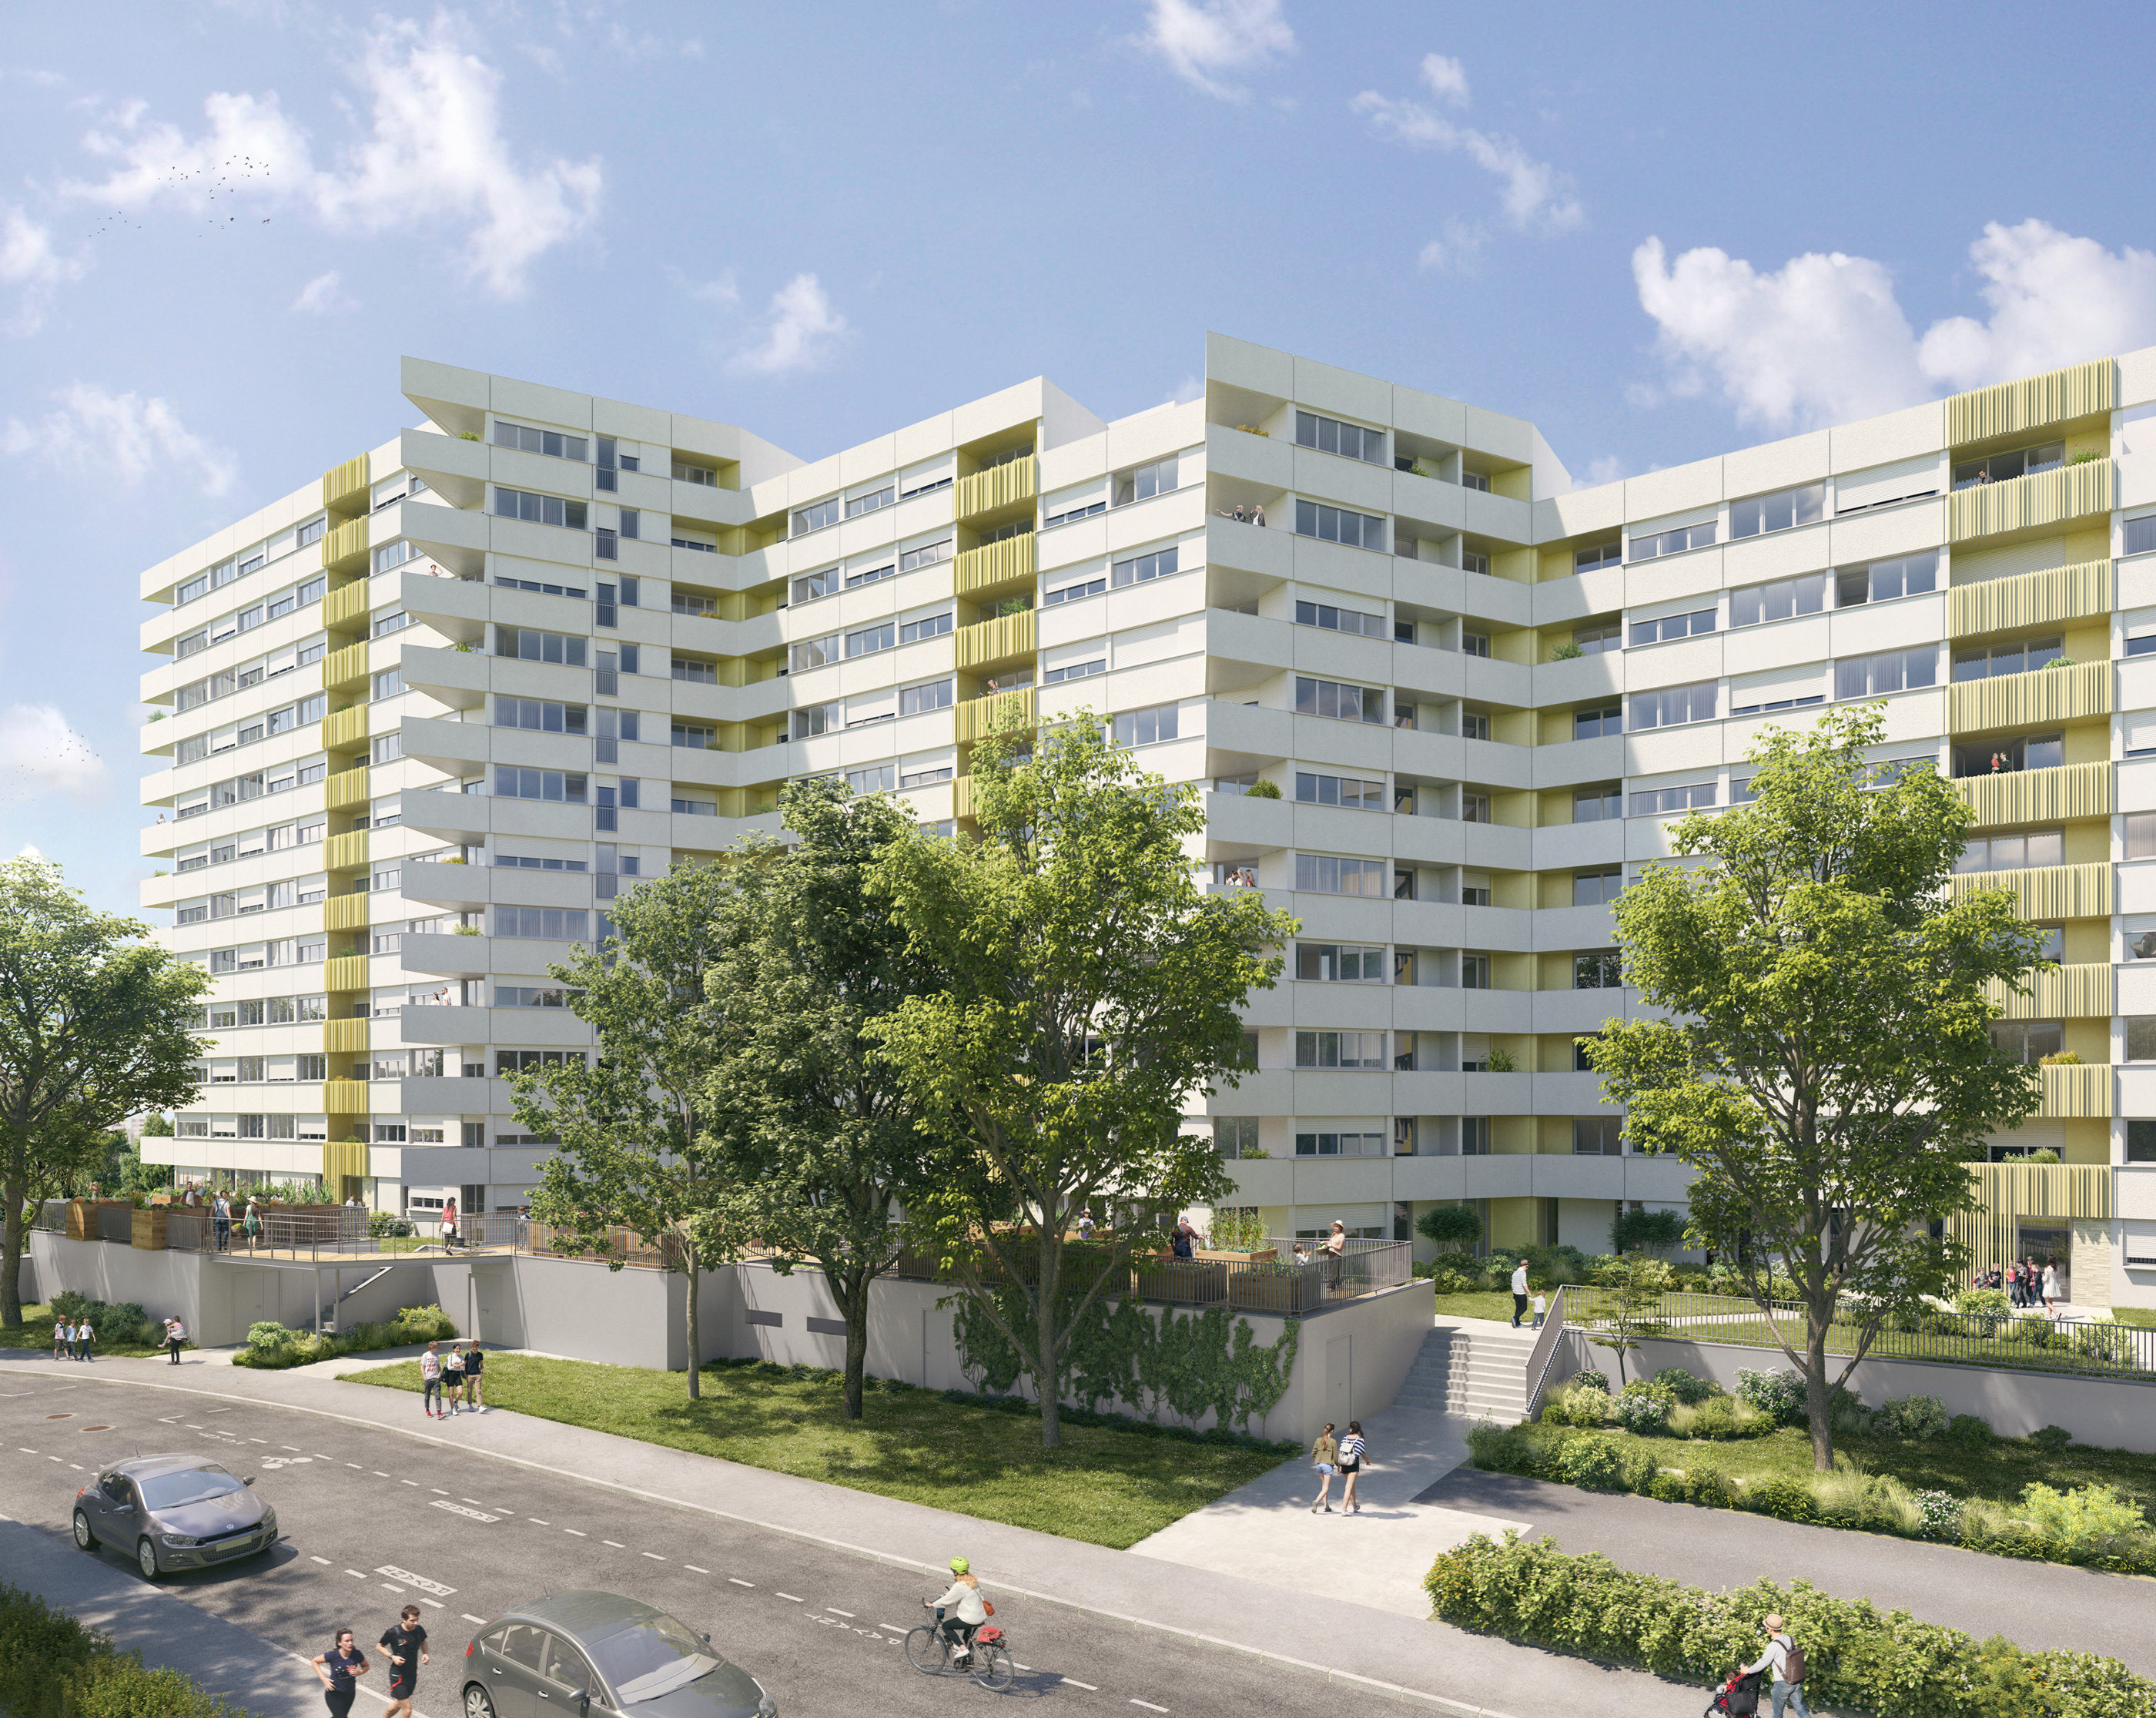 Aura architectes - Nantes - beaulieu2 - résidence réhabilitation - archiviz - image de synthèse - groupe à5